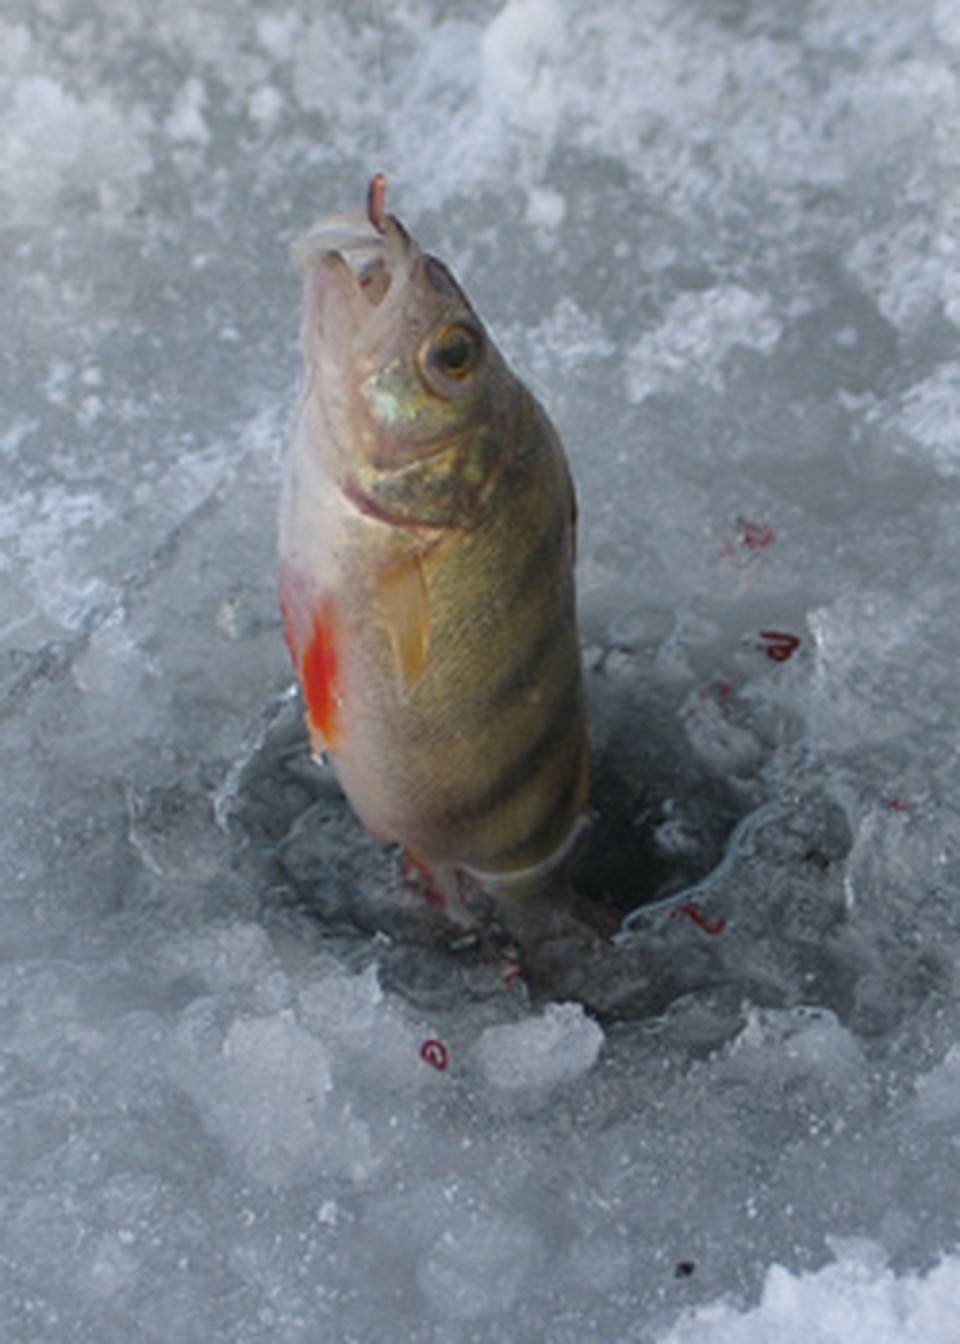 Лучшие наживки для зимней рыбалки. или как зимой не остаться без улова?!